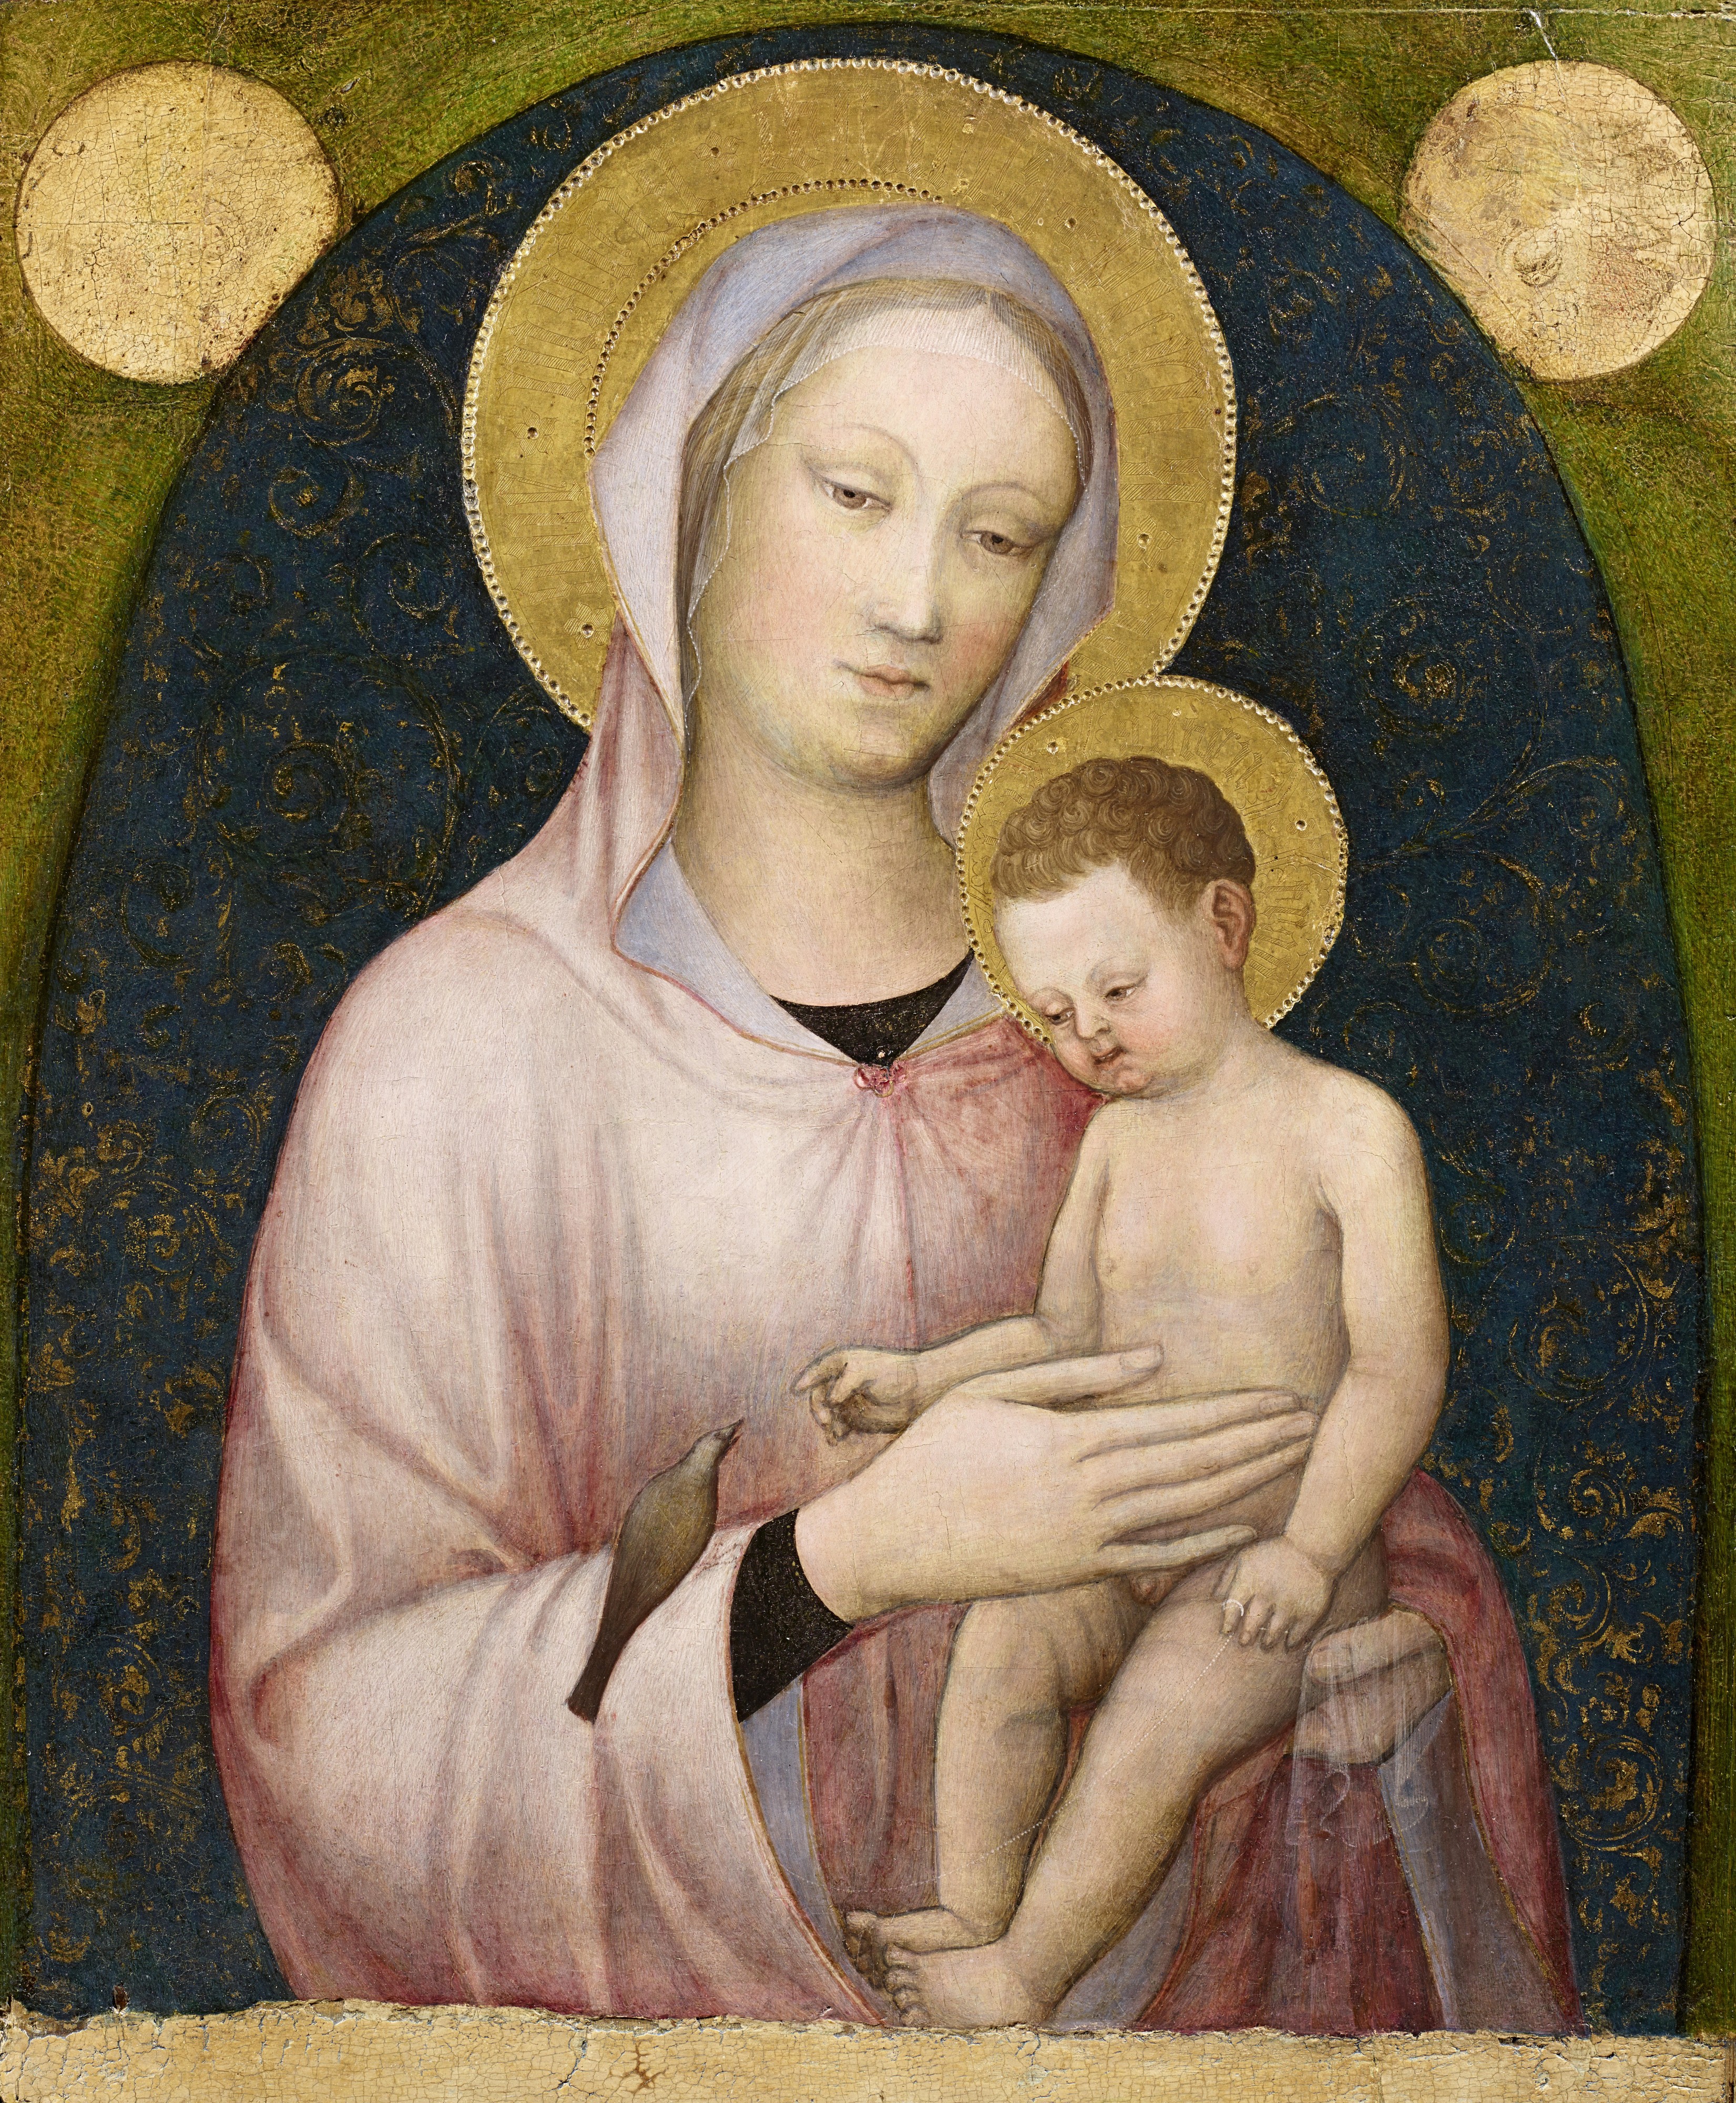 Bellini, Jacopo - Madonna and Child - Accademia Carrara, Bergamo